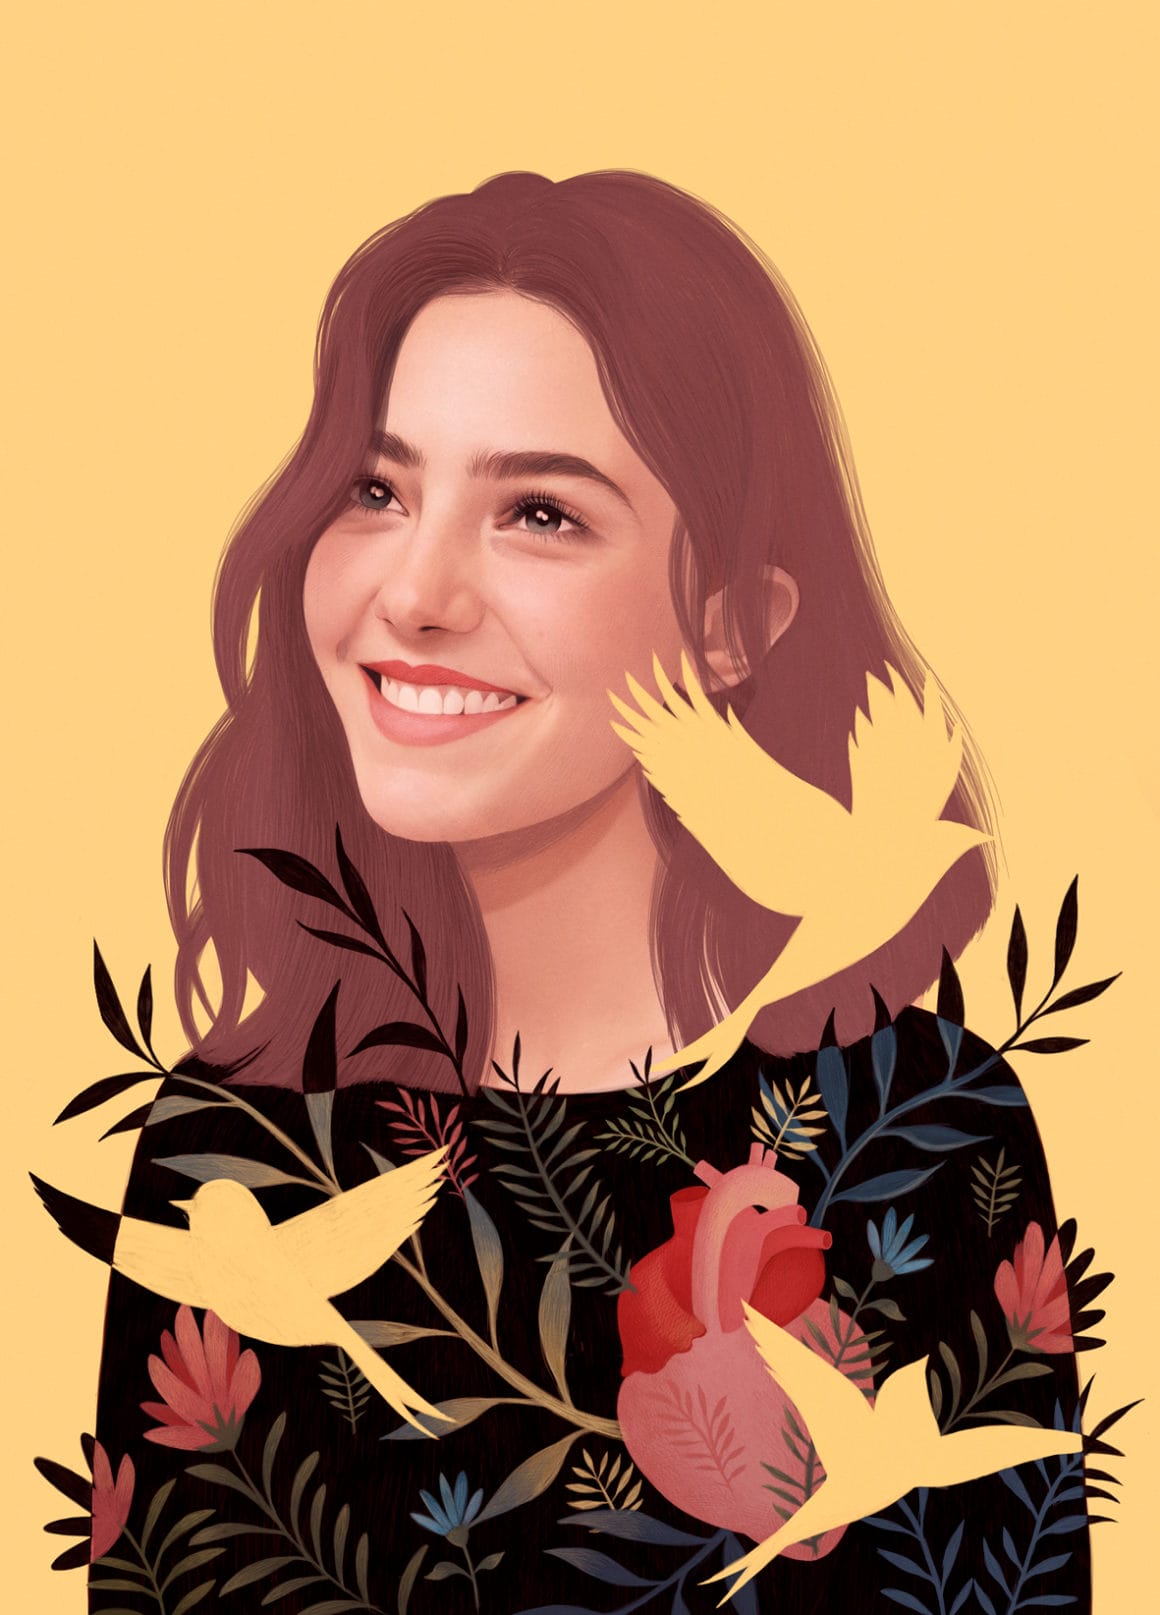 Portrait d'une jeune femme souriante, peau beige/rosée. Sur elle se découpent des formes d'oiseaux de la même couleur jaune que le fond ainsi que des fleurs et un coeur humain.